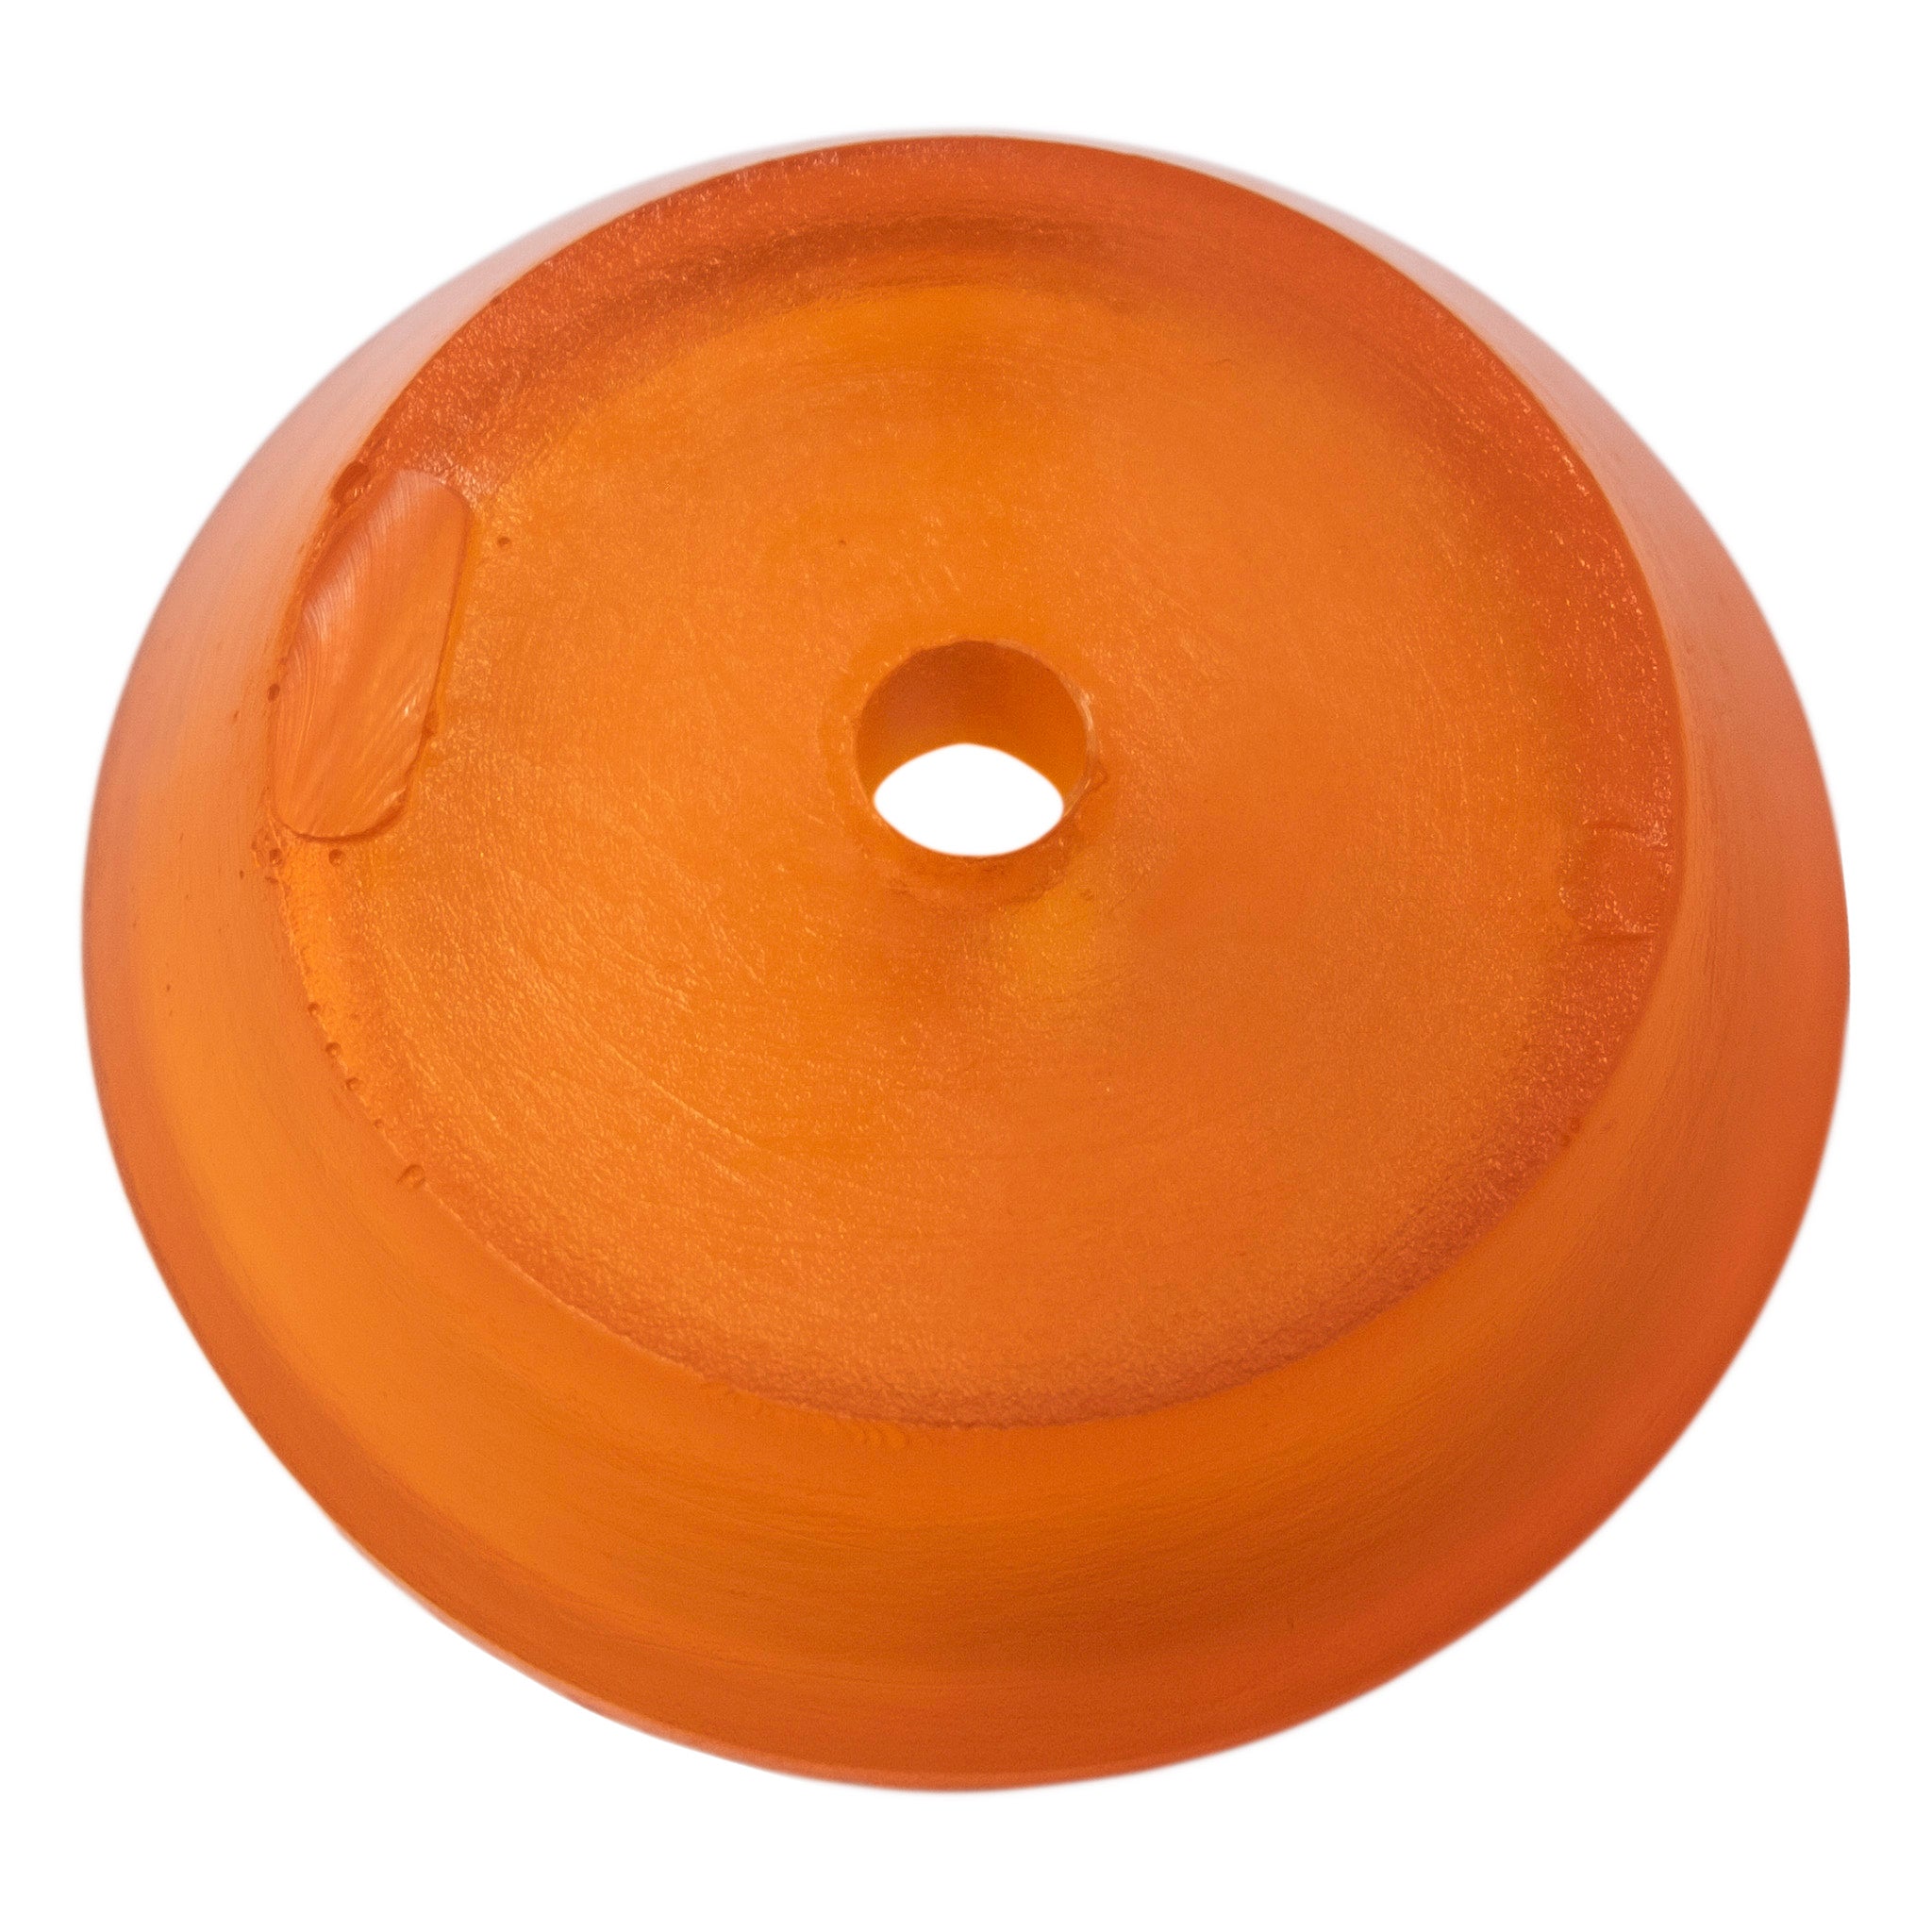 Roller-end bell, Orange